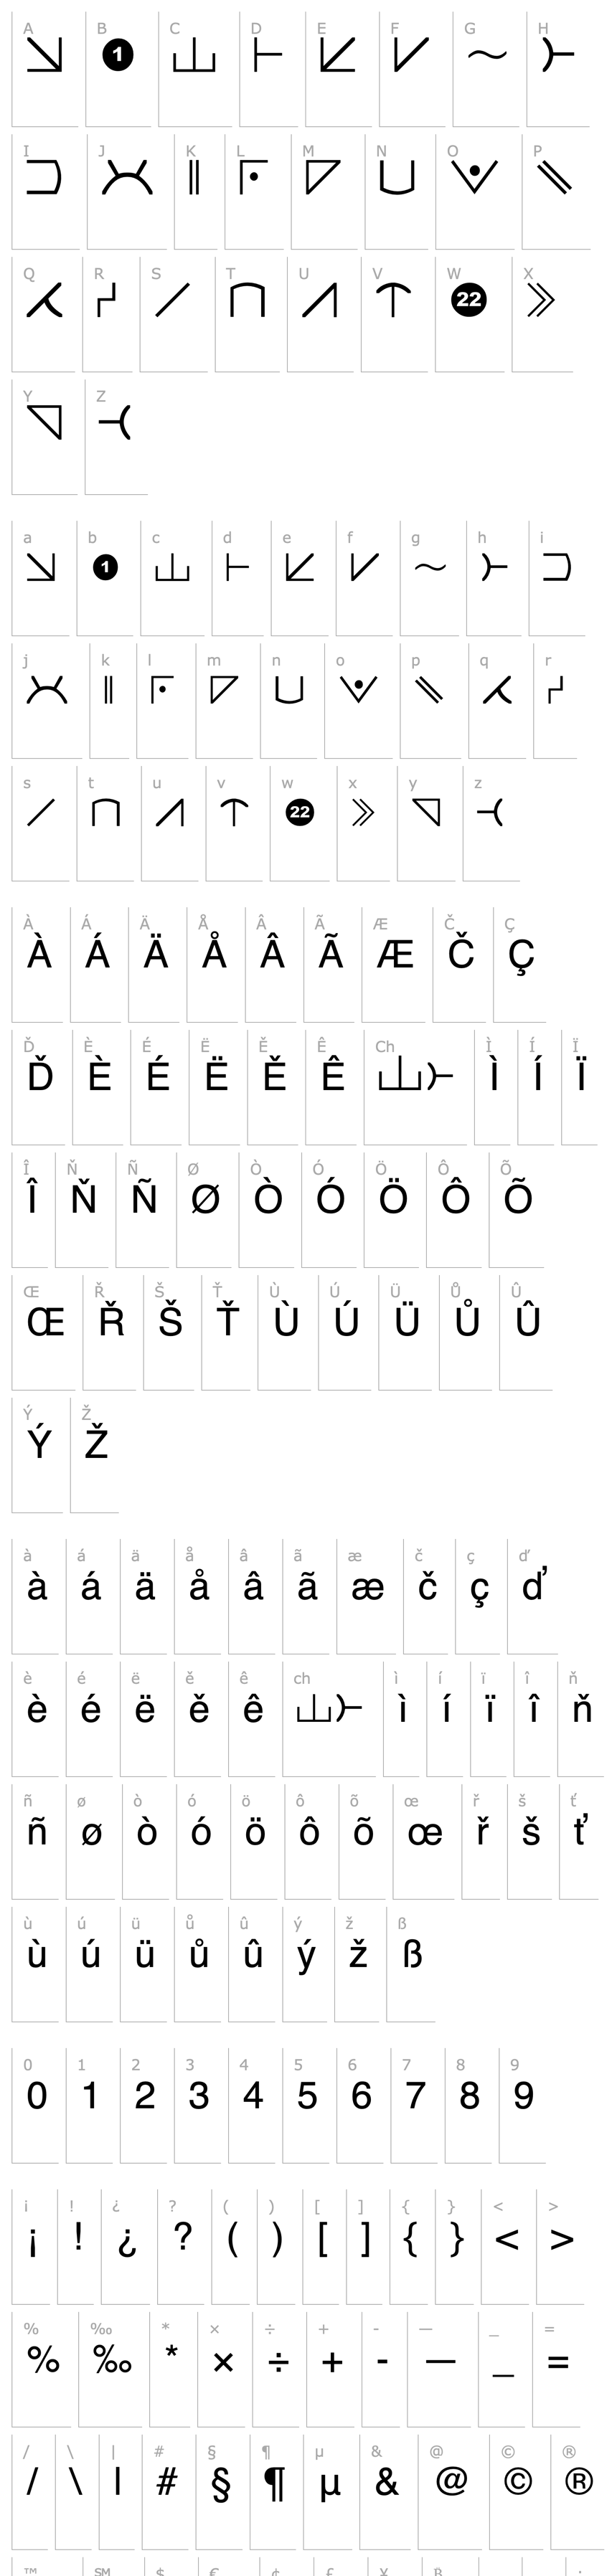 Přehled Futurama Alien Alphabet Two